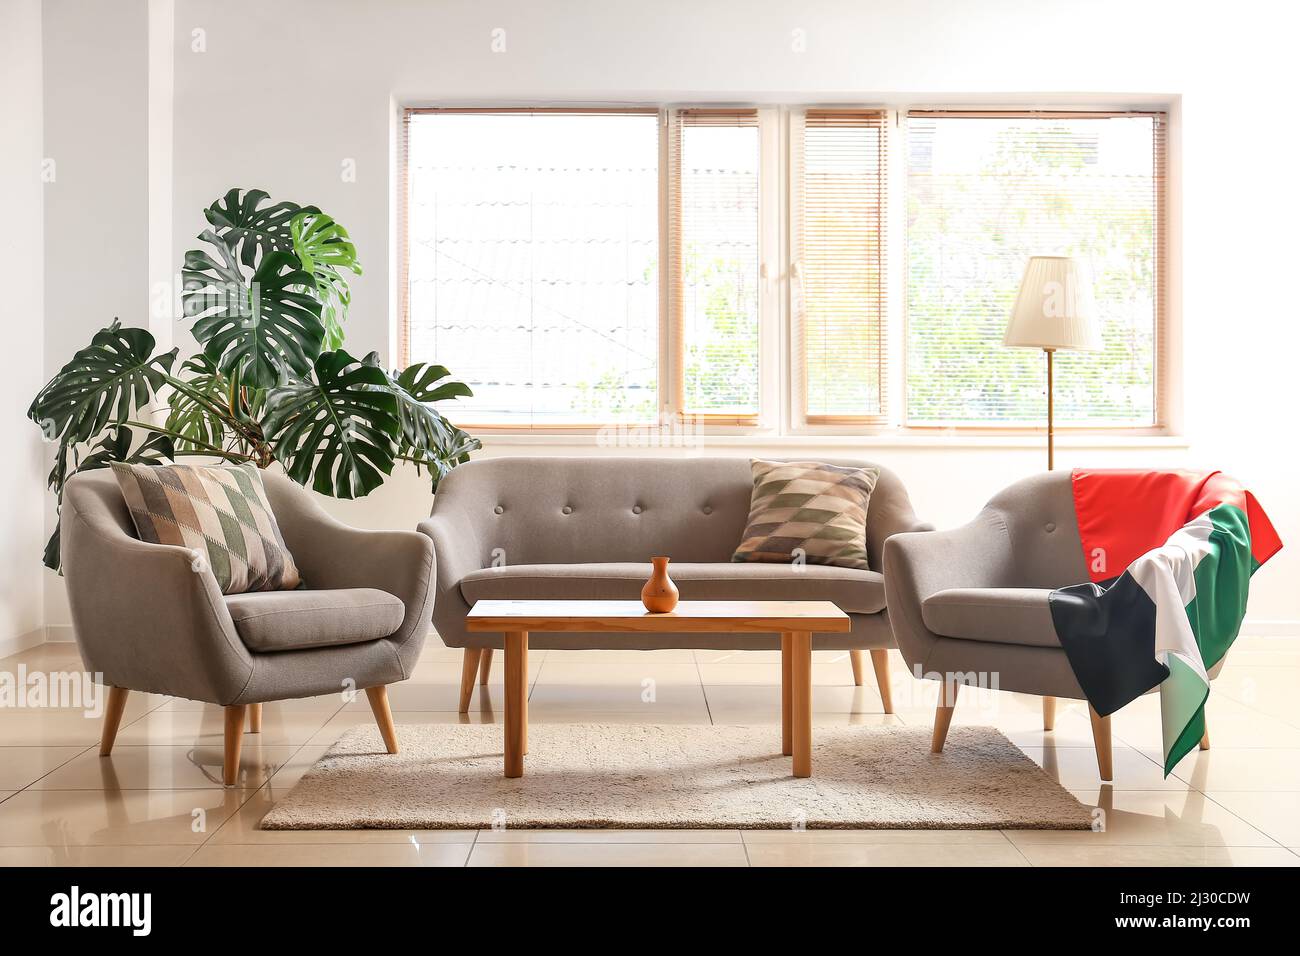 Interior de sala de estar moderna con sofá, sillones y bandera de los Emiratos Árabes Unidos Fotografía de stock